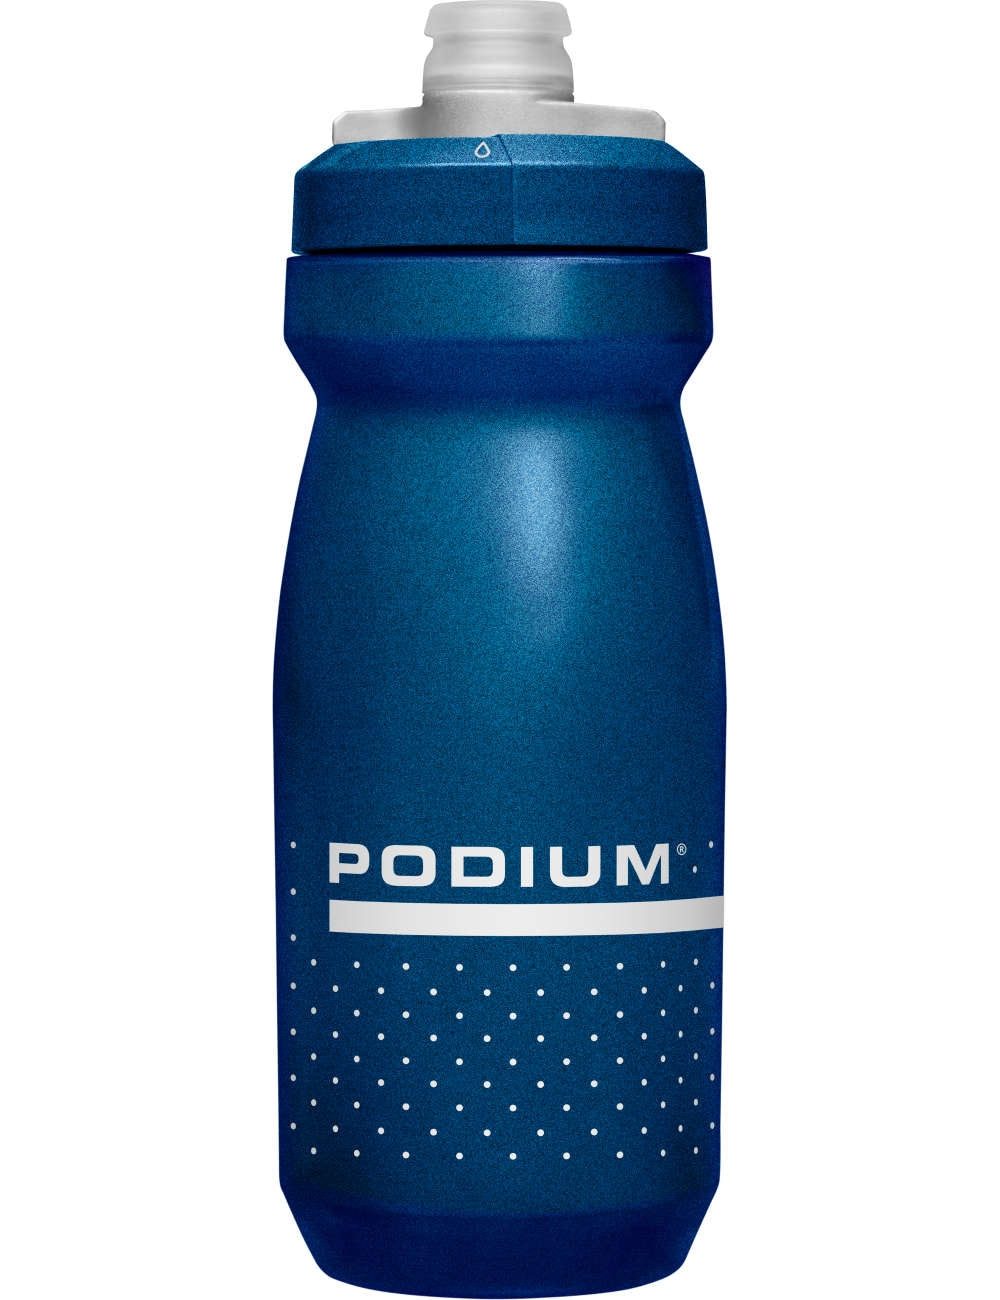 camelbak-bottle-podium-navy-blue-pearl-600ml